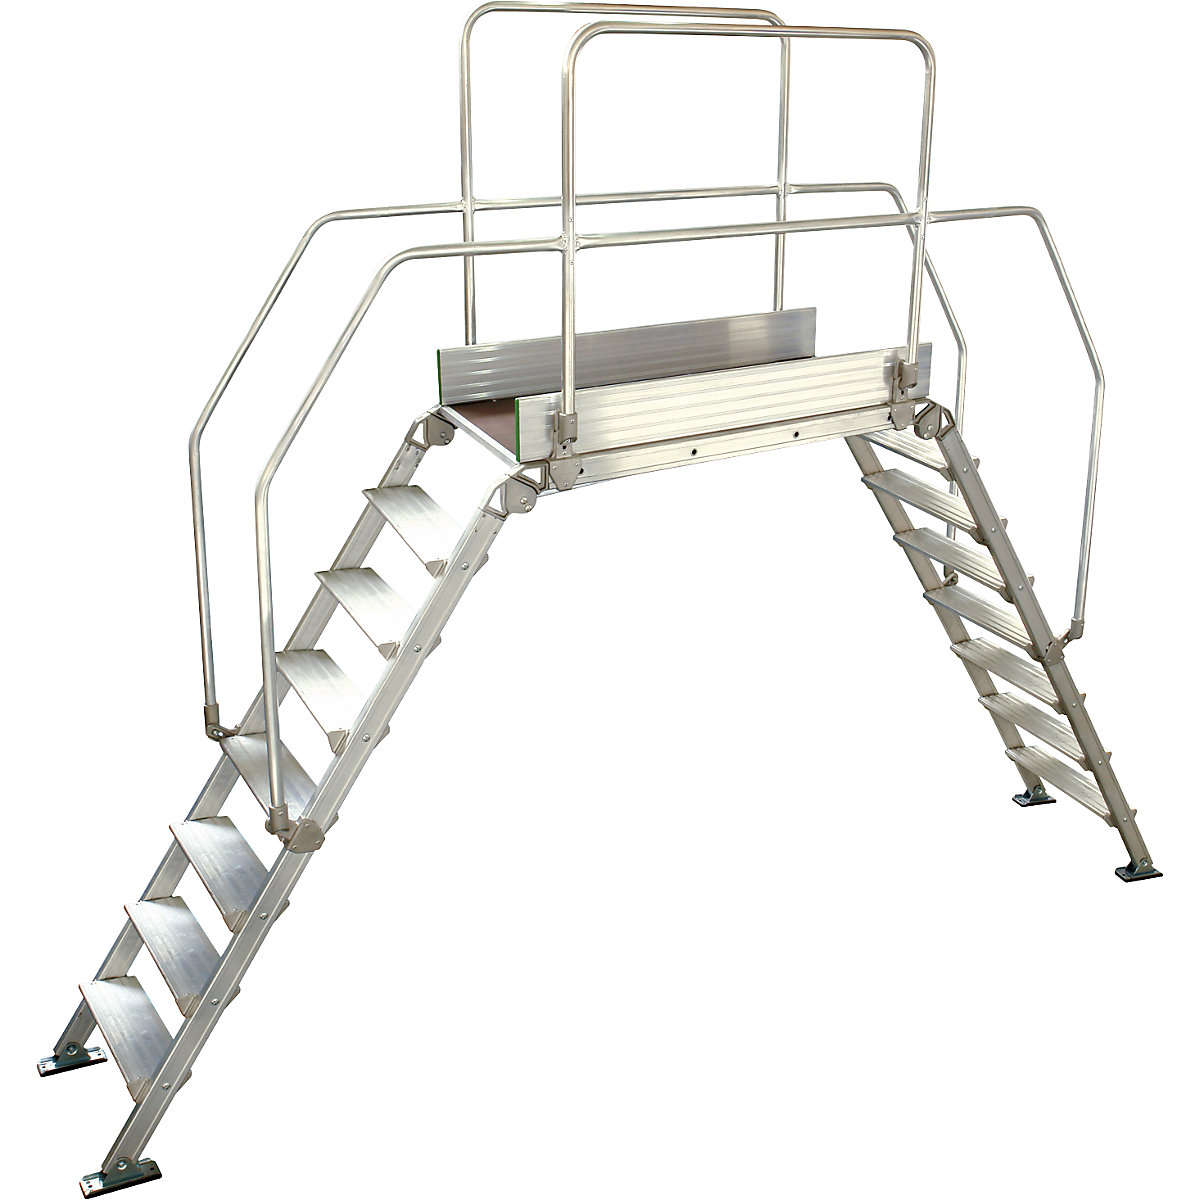 Aluminijasta premostitvena lestev, skupna obremenitev 200 kg, 8 stopnic, podest 1200 x 530 mm